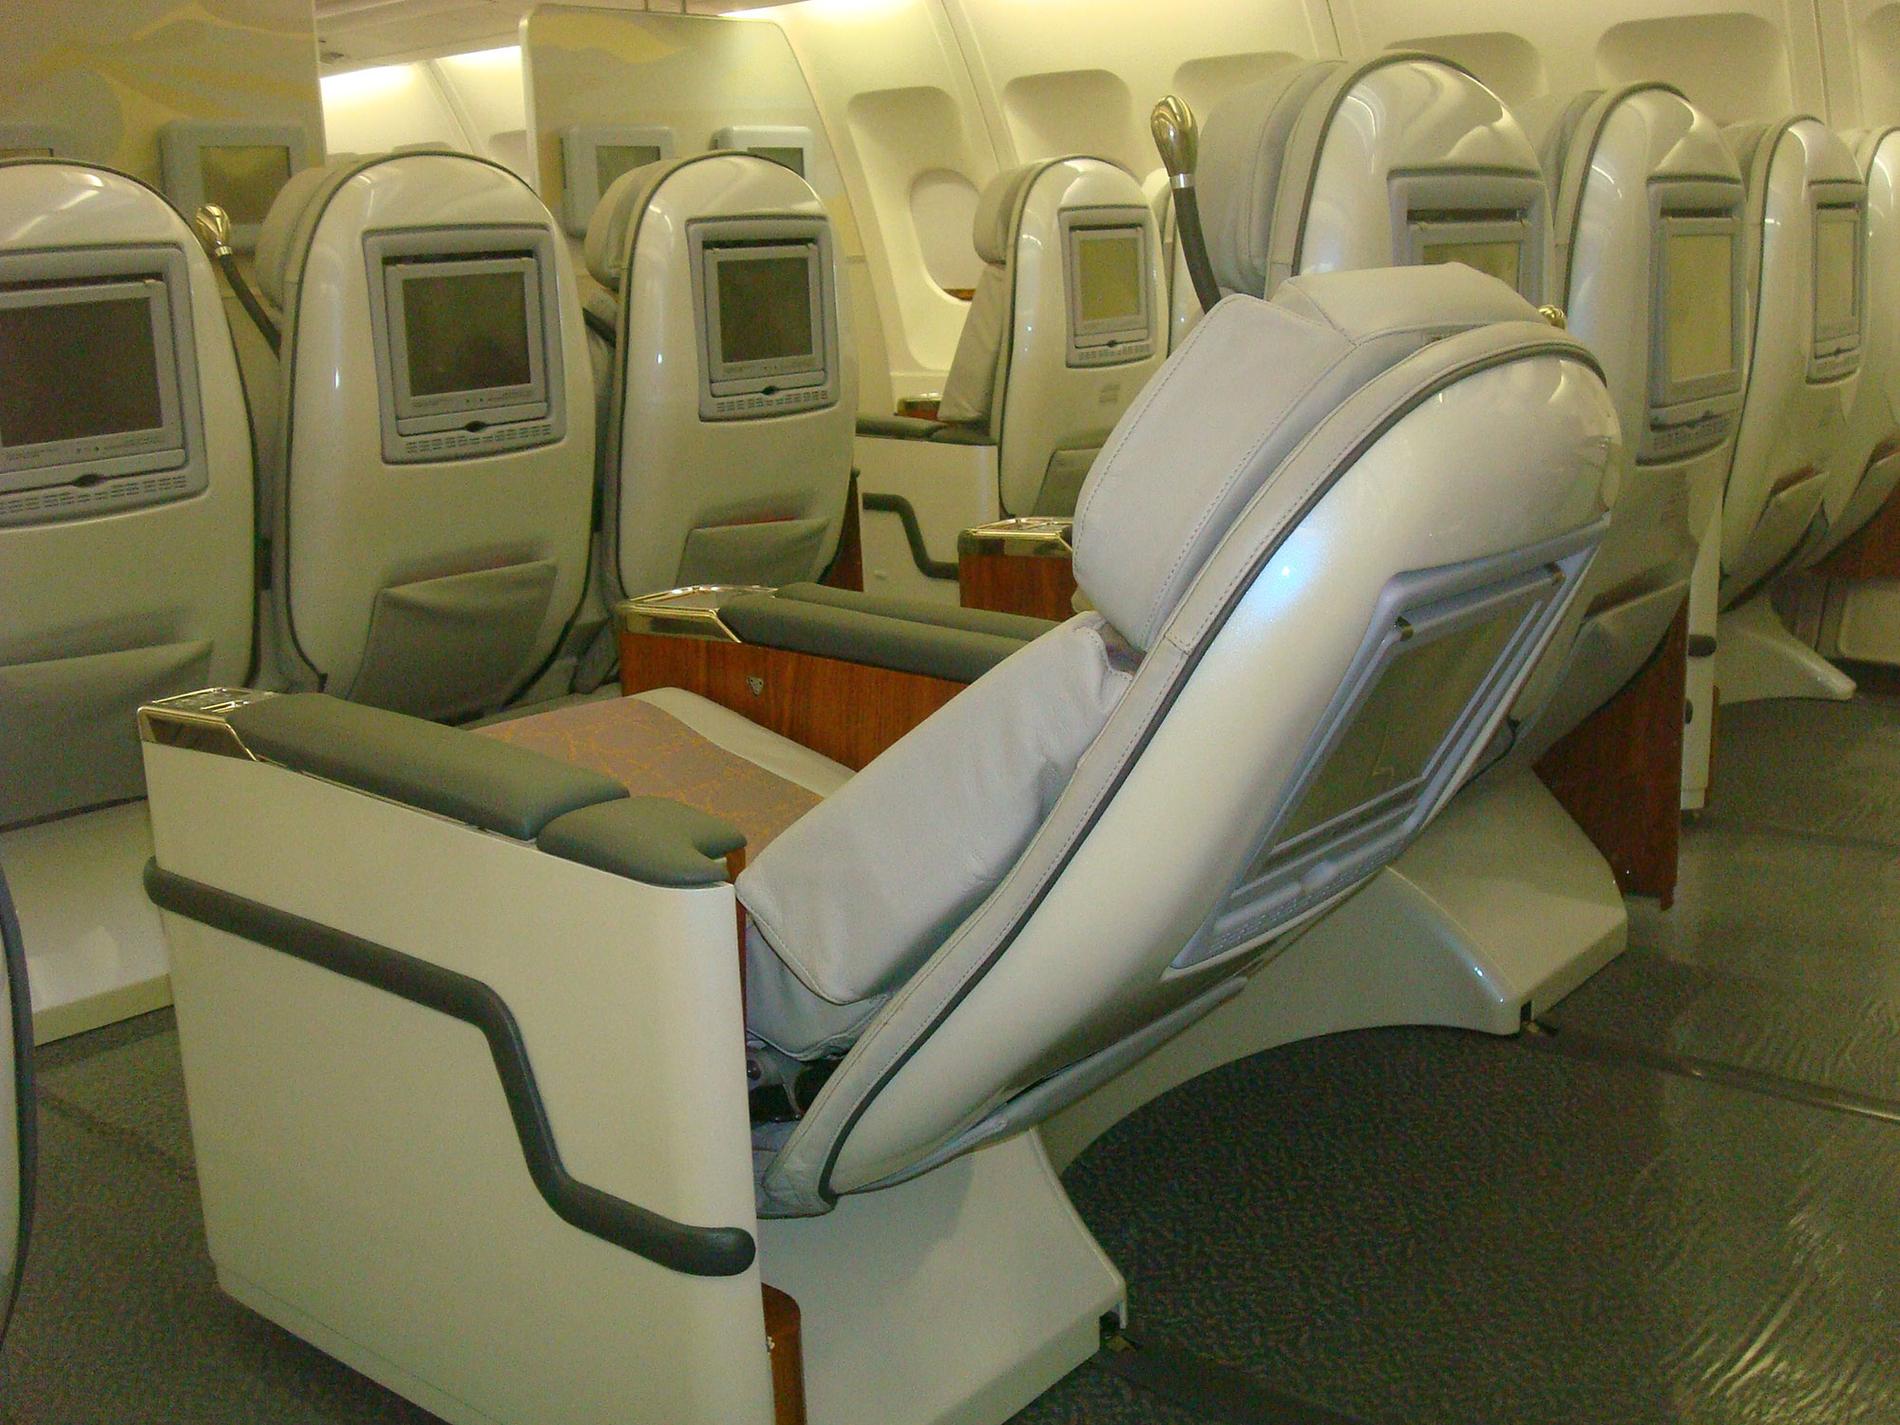 Airbus-maskinerna har tidigare flugit för prestigebolagen Singapore Airlines och Emirates, vilket borgar för god standard ombord.